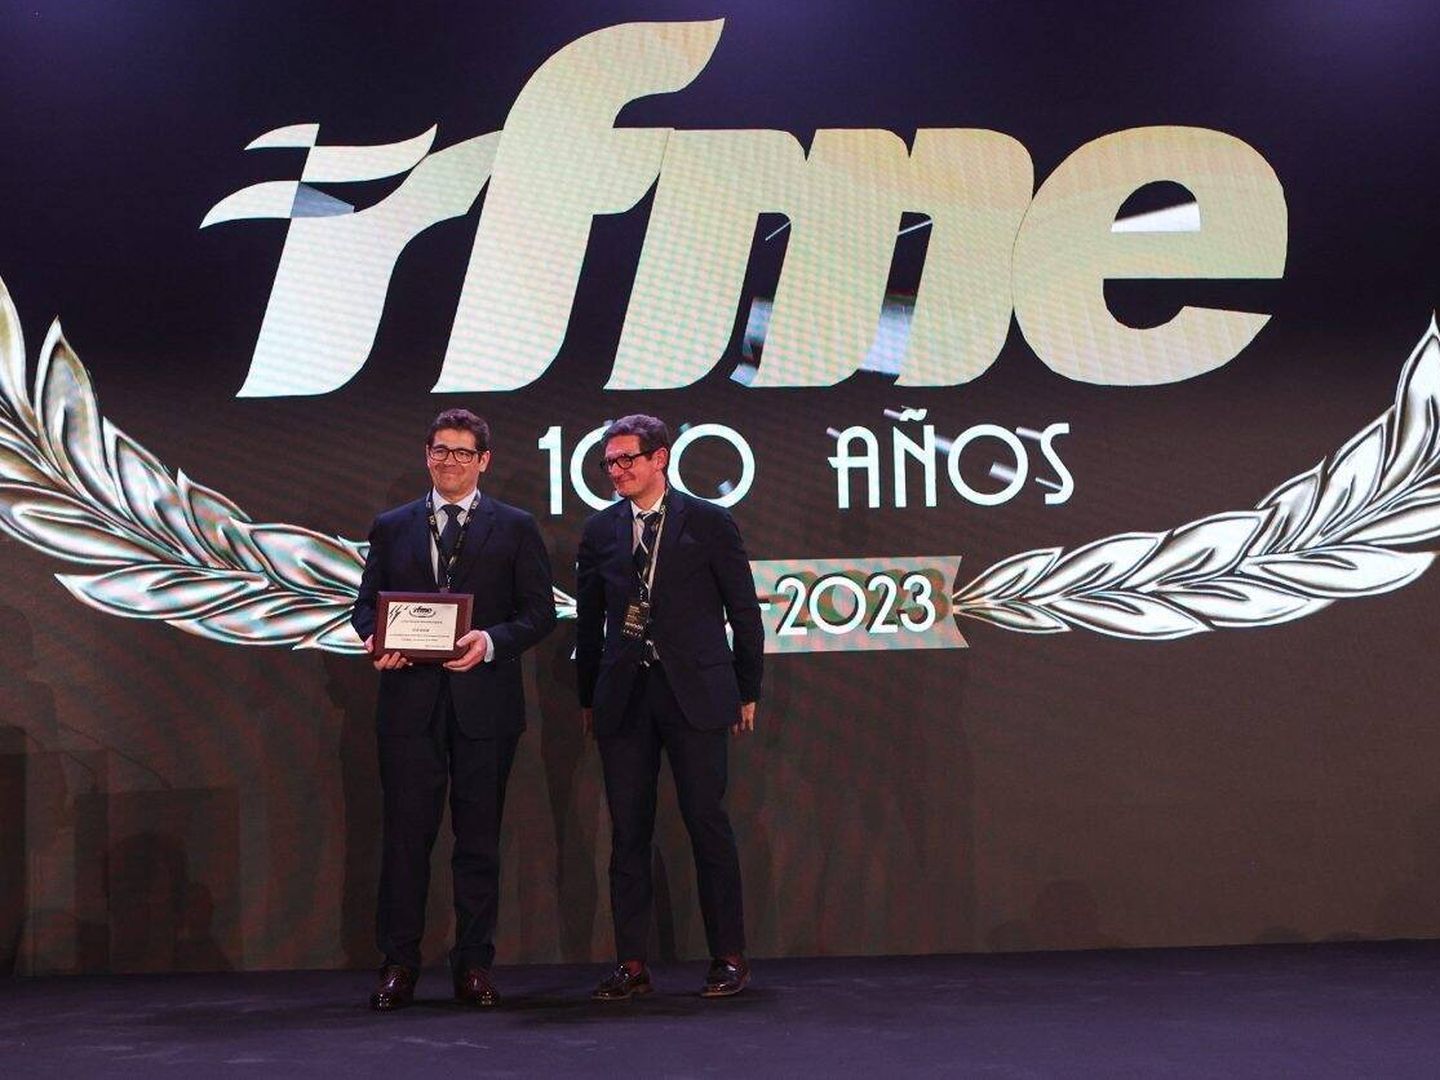 El día anterior a nuestra entrevista, Bordoy recogía en Madrid el premio concedido por la RFME a Anesdor por su defensa de la moto.